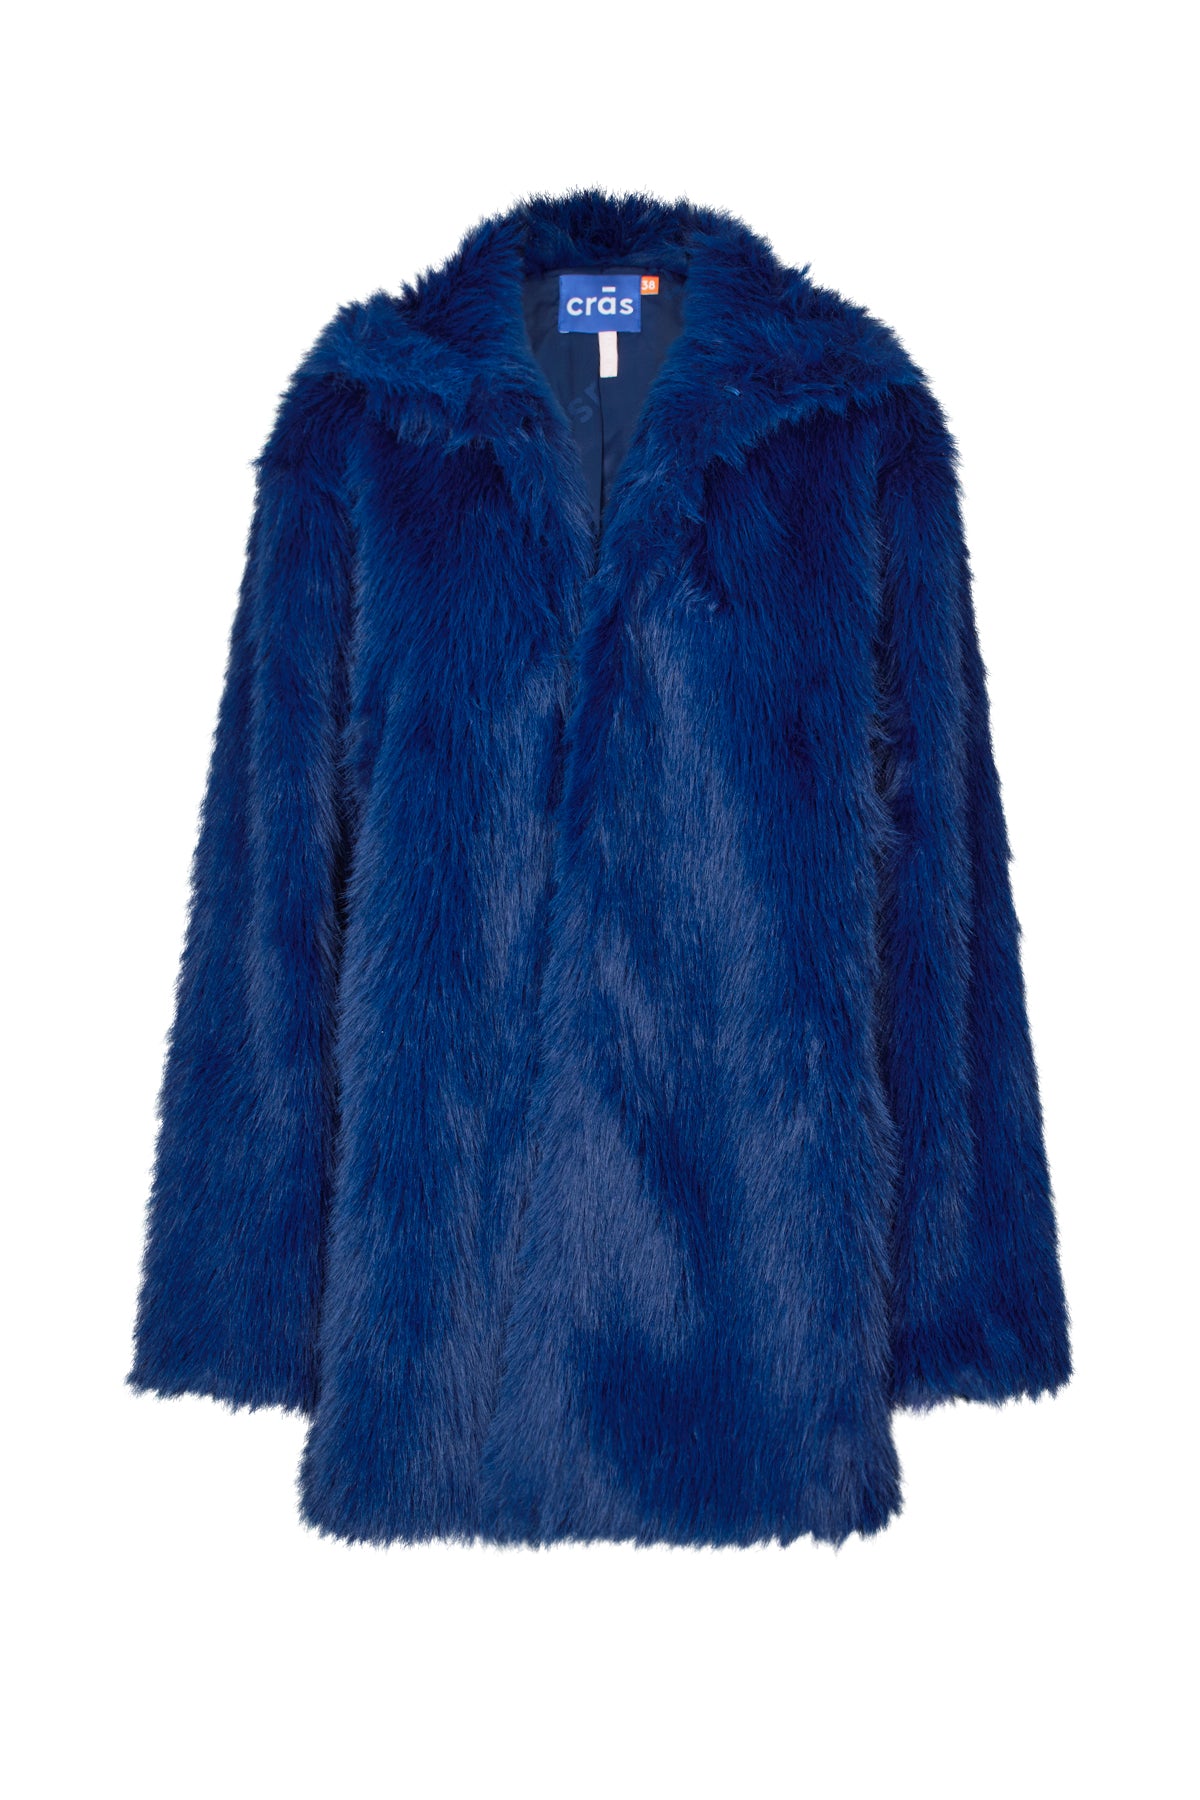 CRAS Violet Coat Coat Blue Depths